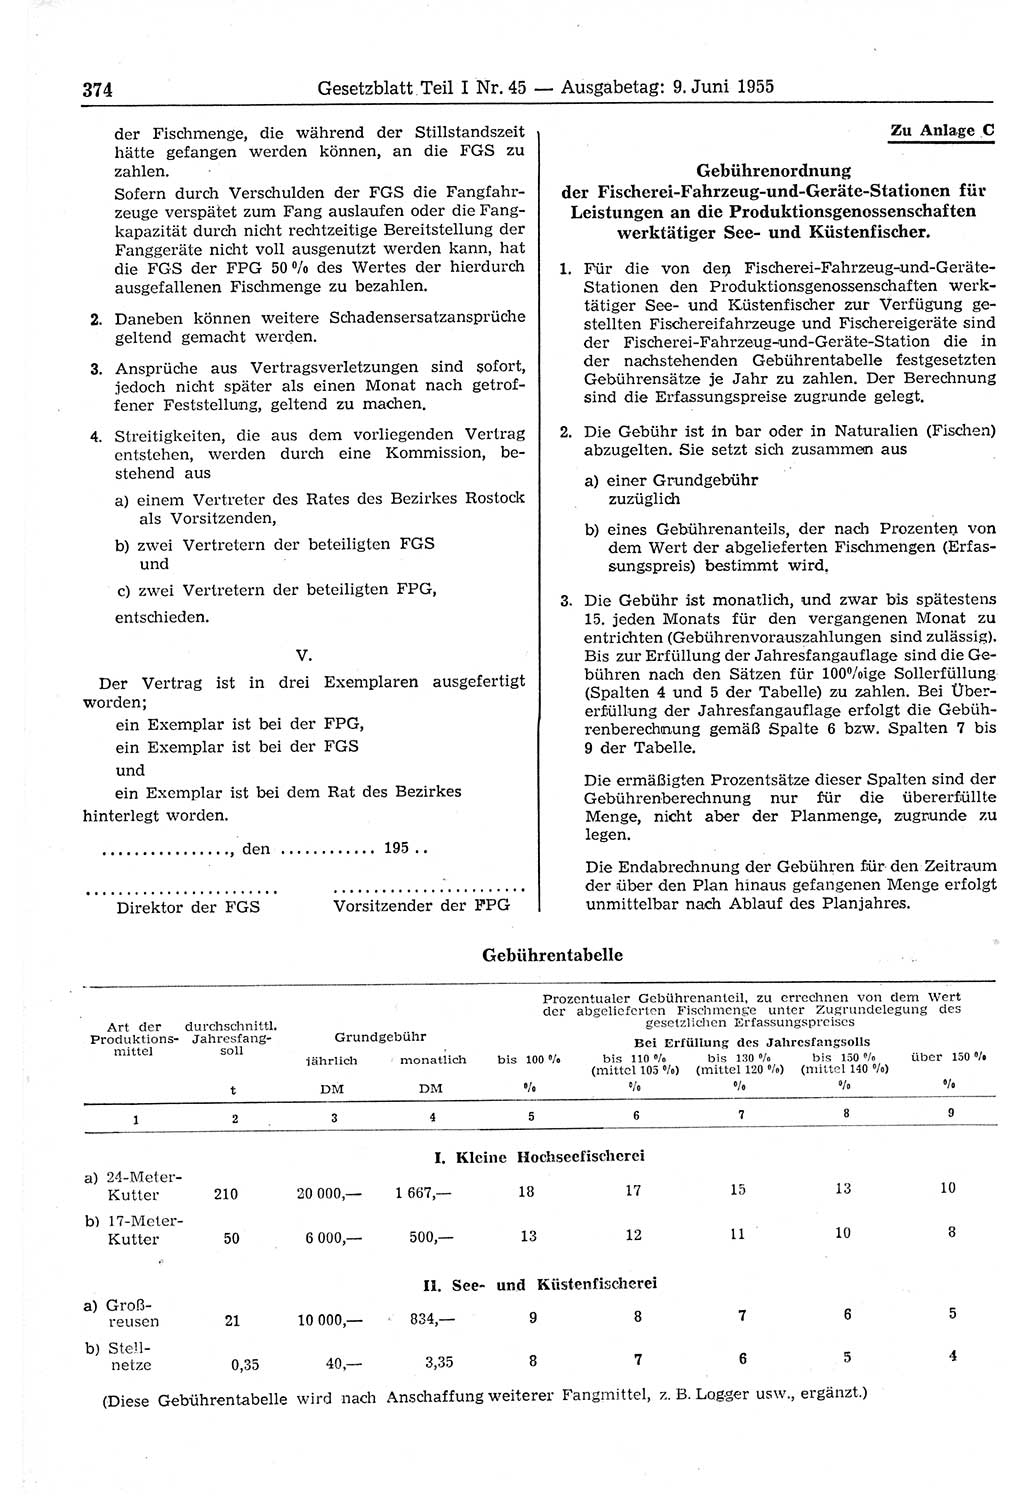 Gesetzblatt (GBl.) der Deutschen Demokratischen Republik (DDR) Teil Ⅰ 1955, Seite 374 (GBl. DDR Ⅰ 1955, S. 374)